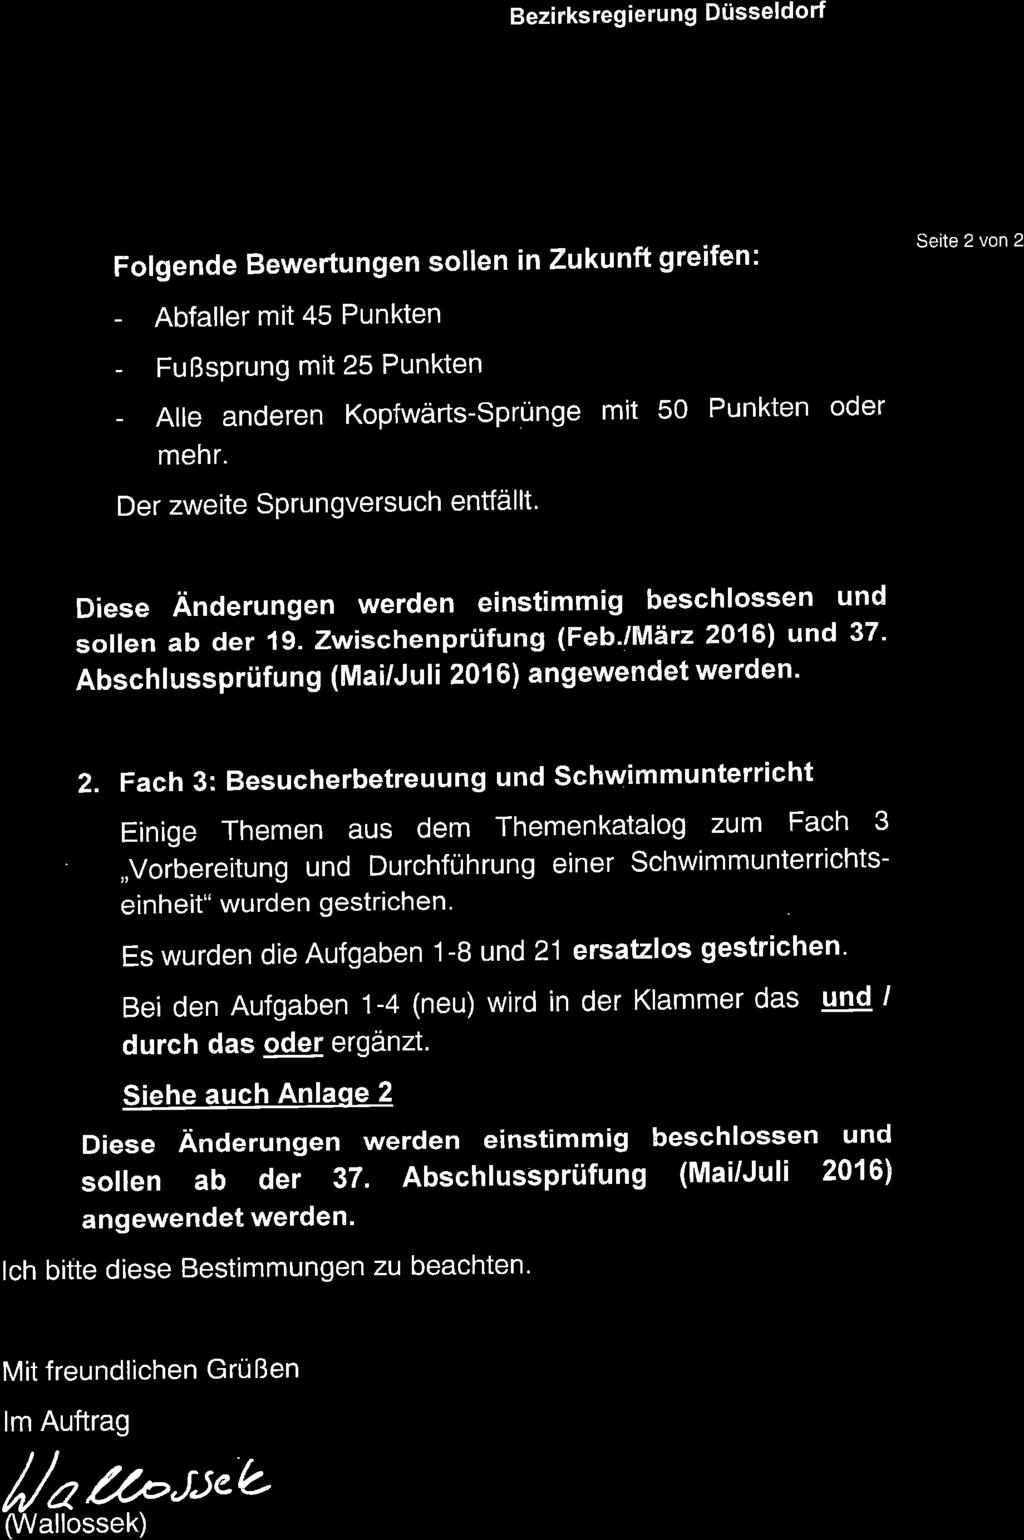 Bezirksregierung Düsseldorf Folgende Bewertungen sollen in Zukunft greifent - Abfaller mit 45 Punkten - Fußsprung mit 25 Punkten - Alle anderen Kopfwärts-sprünge mit 50 Punkten oder mehr.